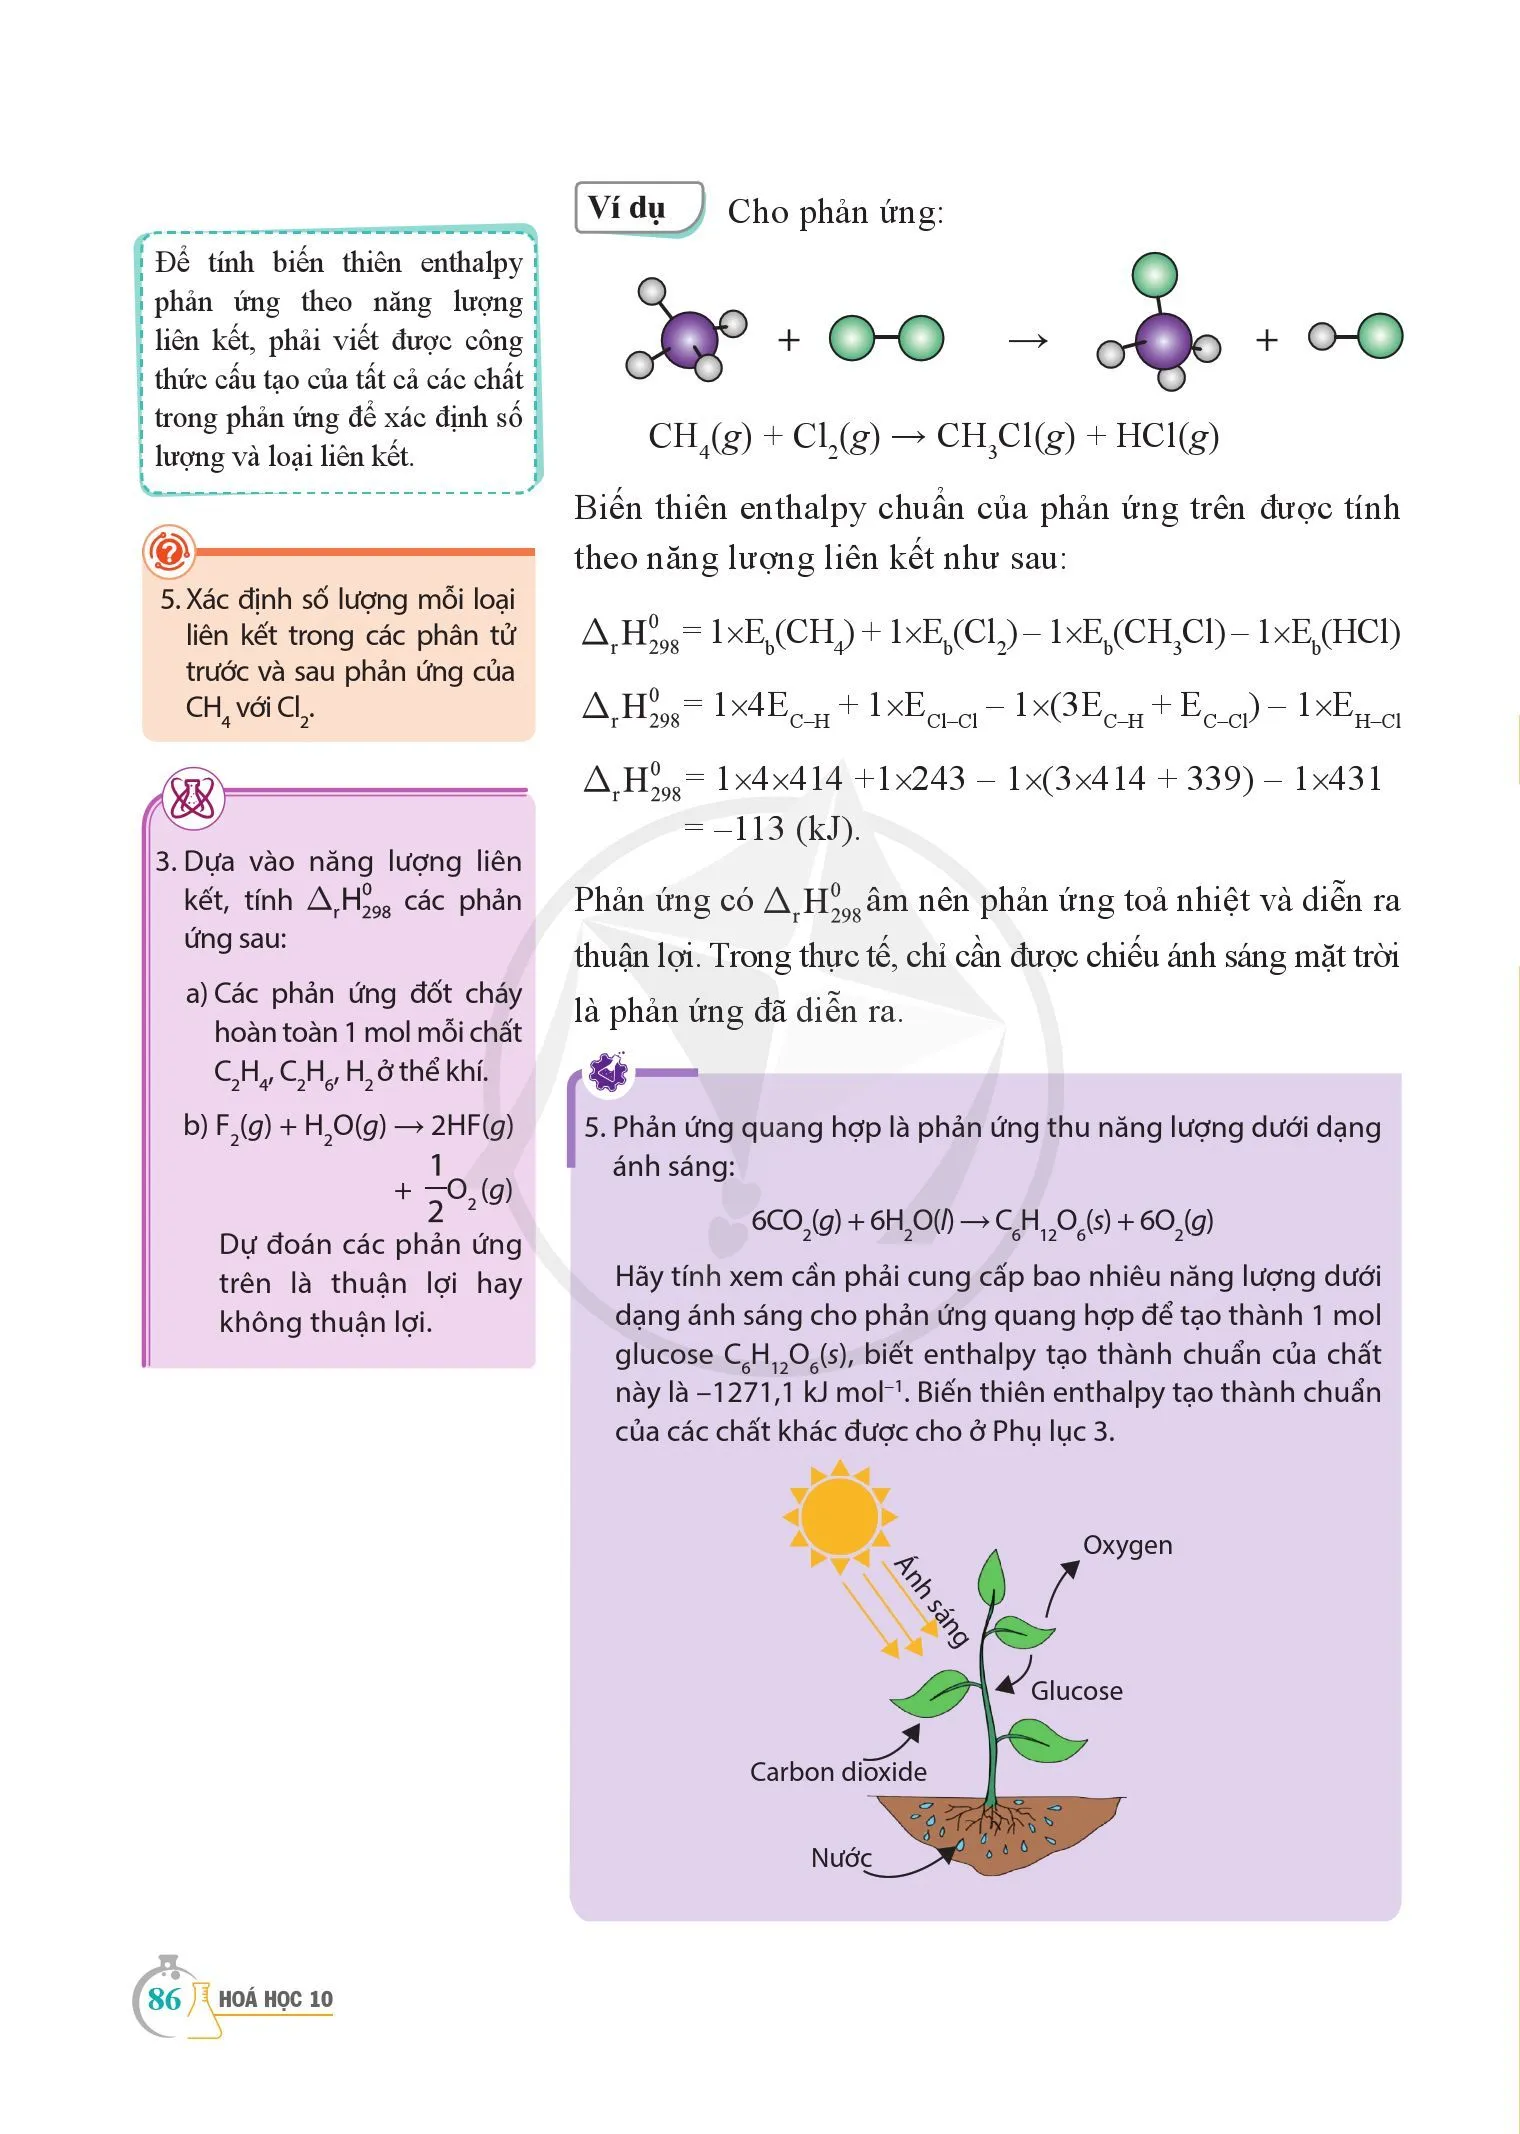 Bài 15. Ý nghĩa và cách tính biến thiên enthalpy phản ứng hoá học.